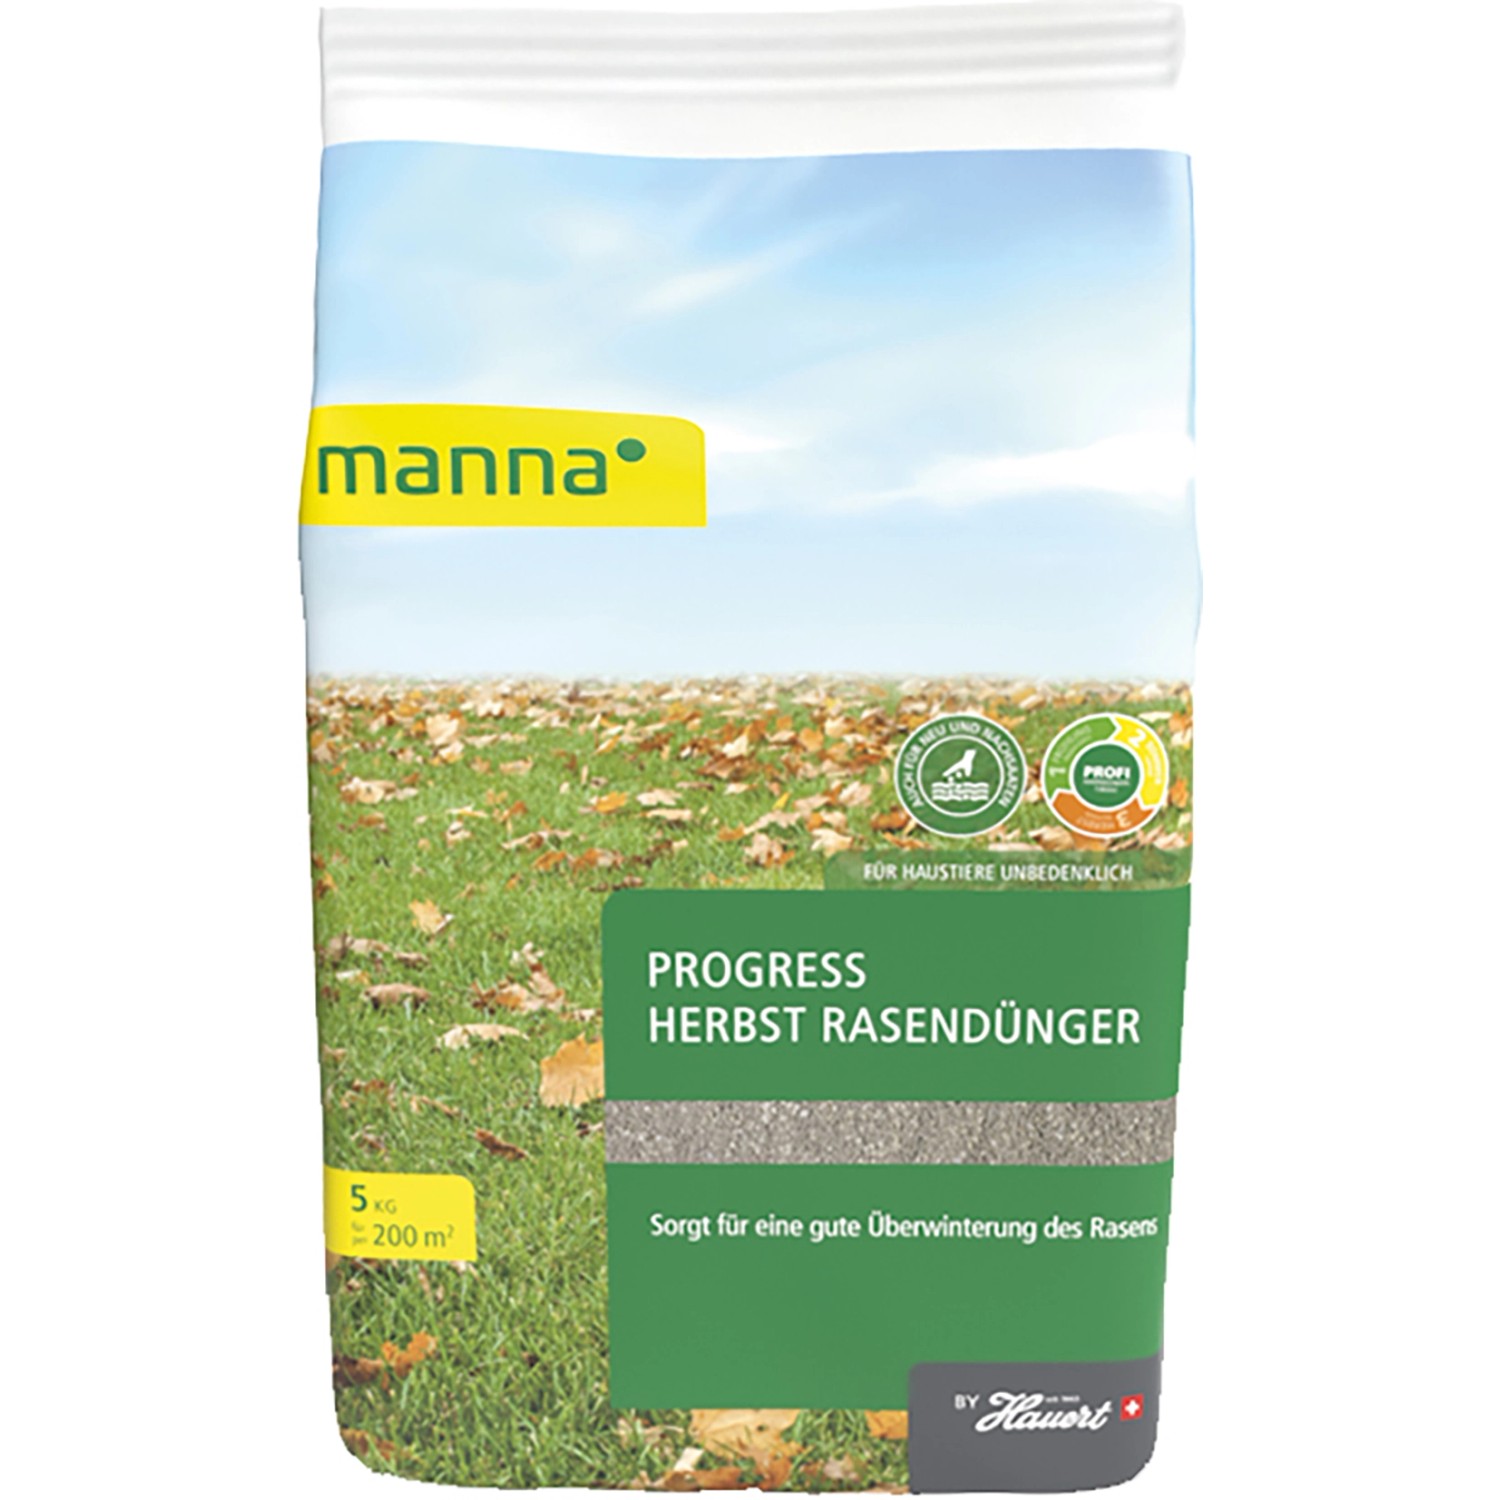 Manna Progress Herbst Rasendünger 5 kg von Manna